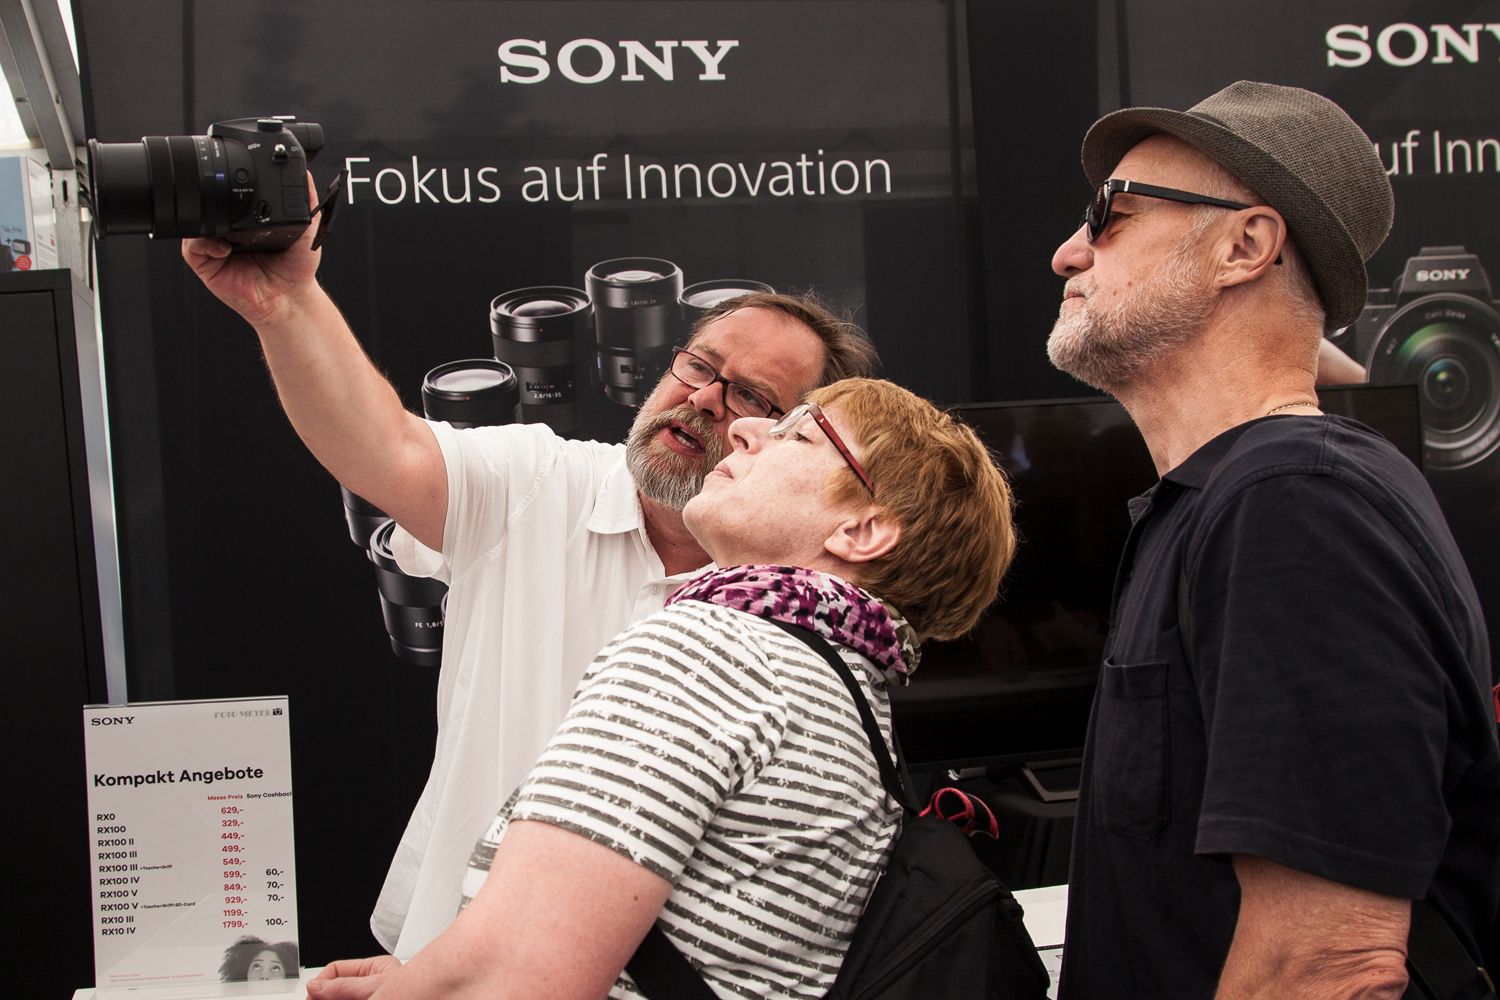 Service von der Beratung durch Mitarbeiter von Sony auf dem Fotomarkt